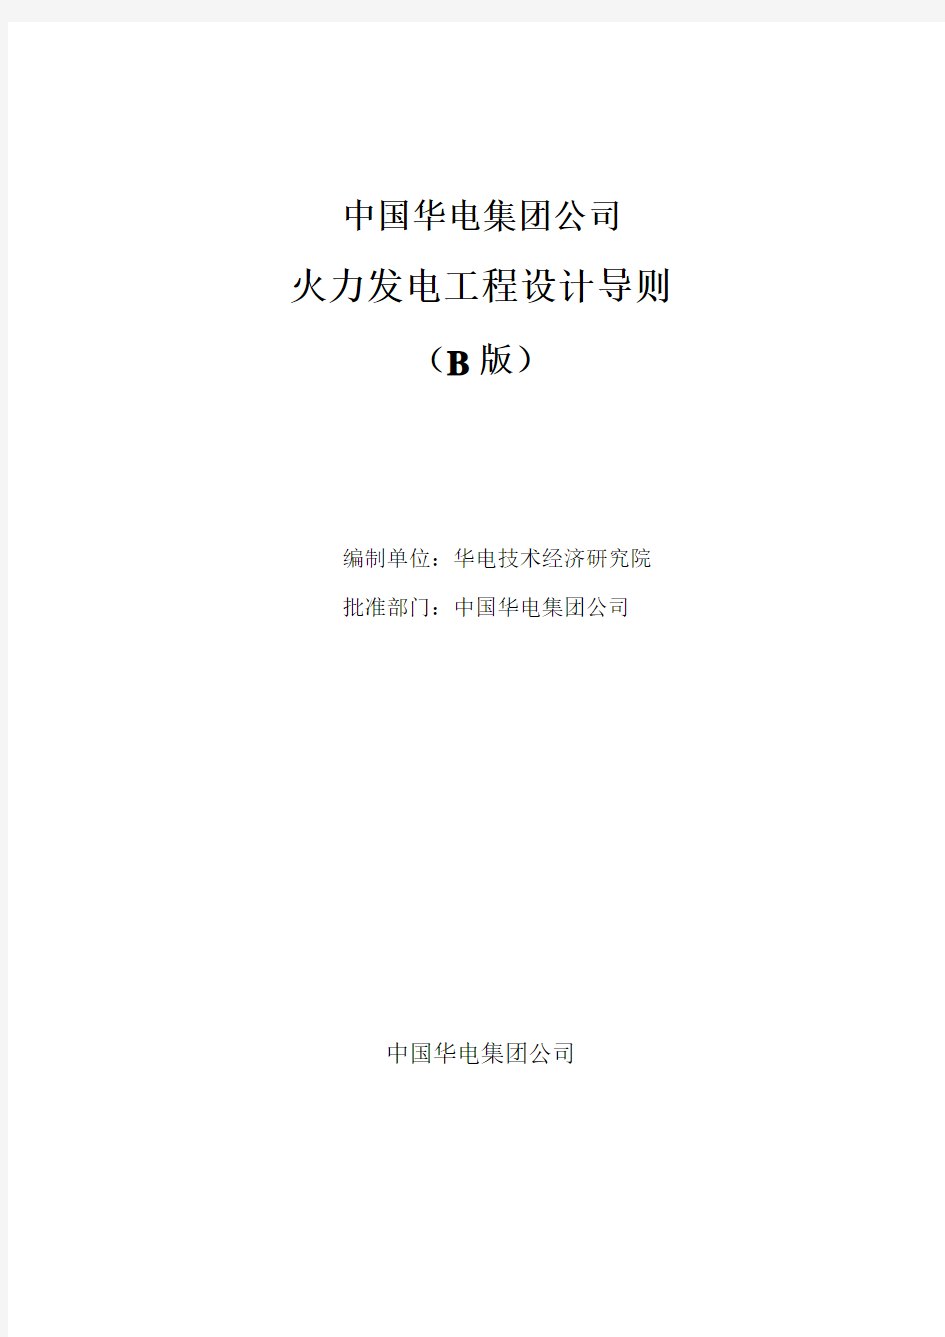 中国华电集团公司火力发电工程设计导则(B版)